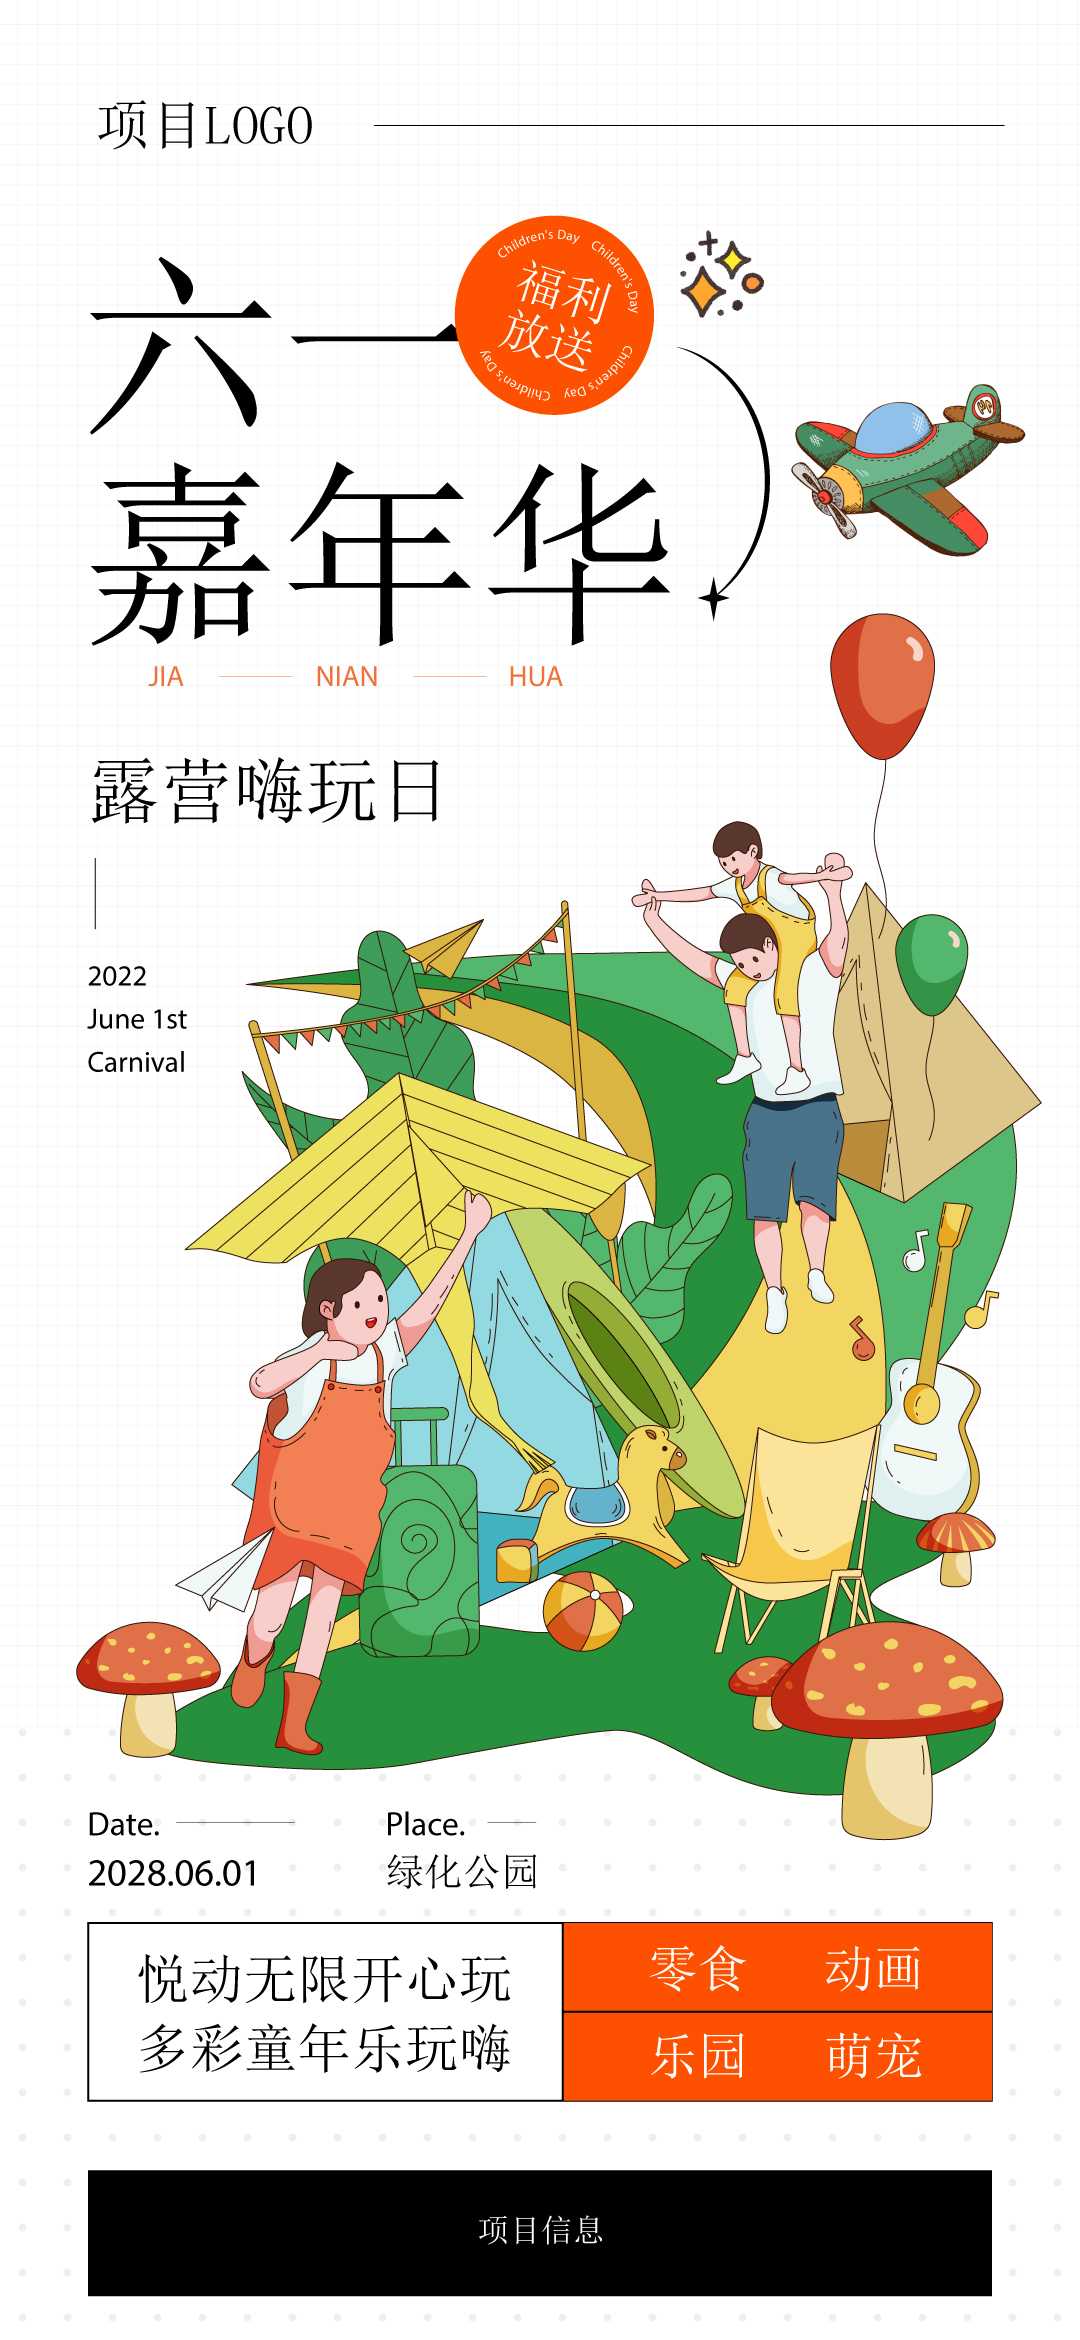 六一梦幻嘉年华：绿化公园的欢乐盛宴创意海报插画